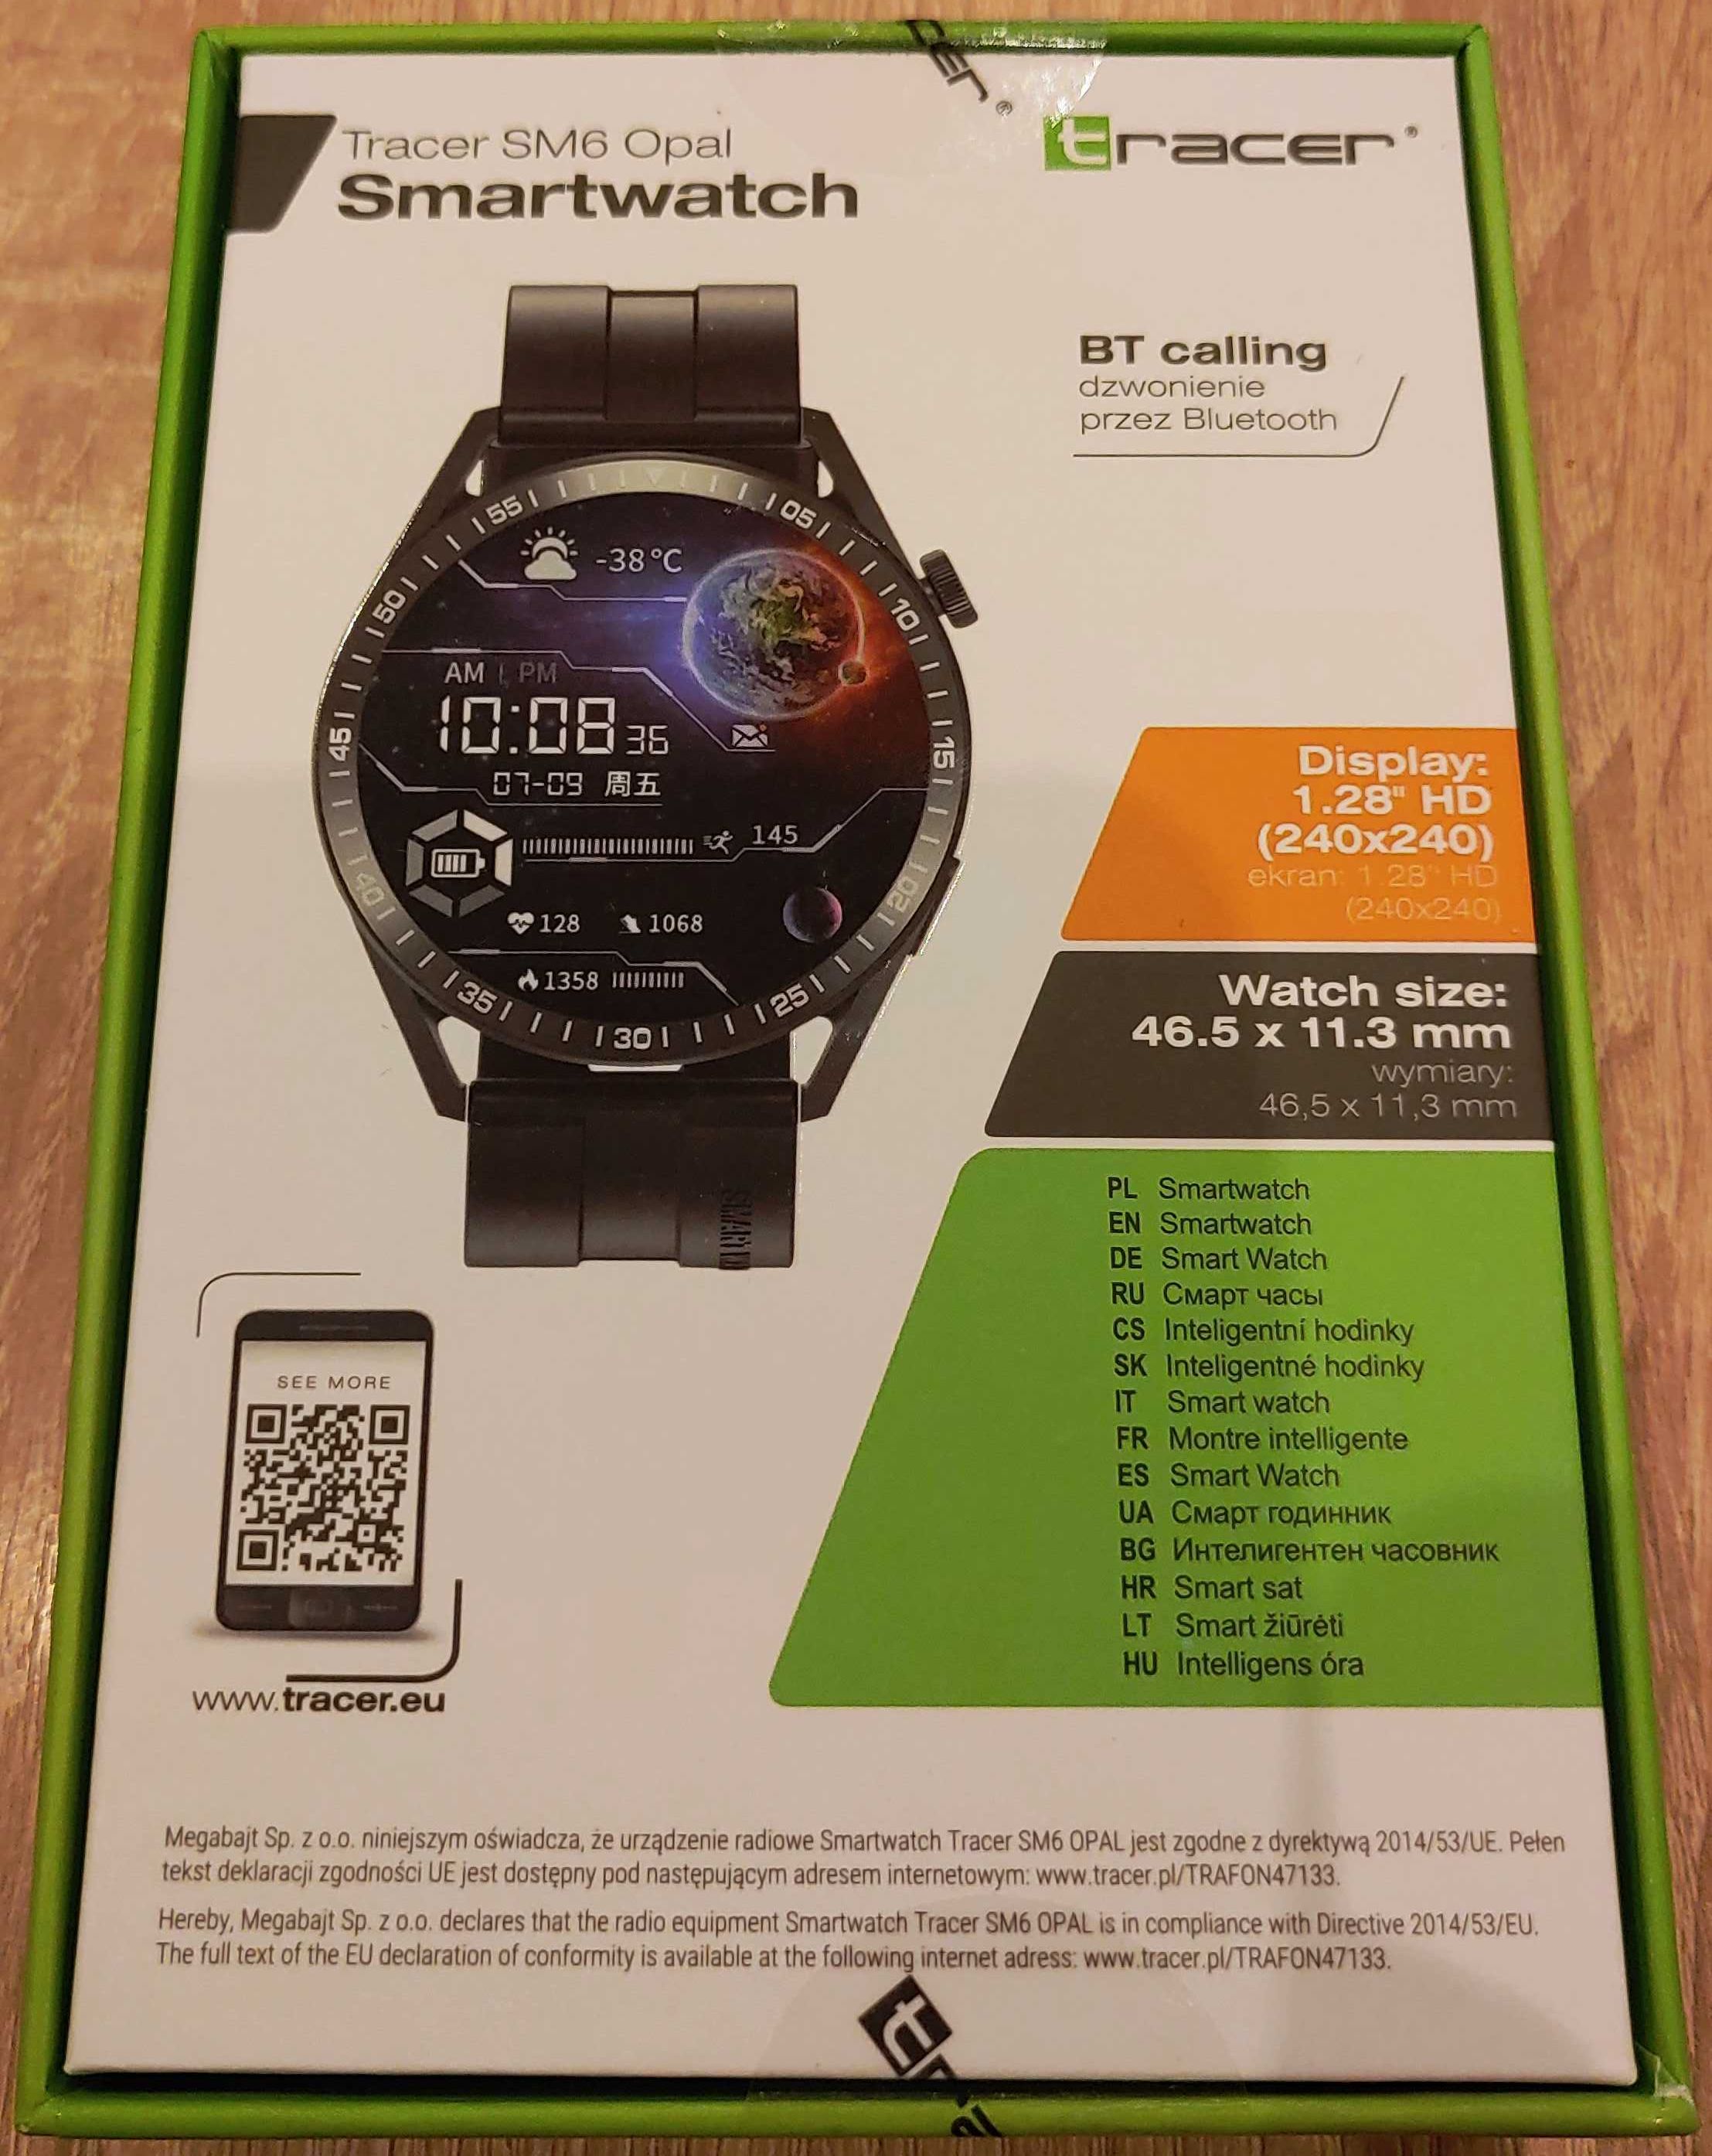 Nowy smartwatch Tracer SM6 Opal na gwarancji producenta